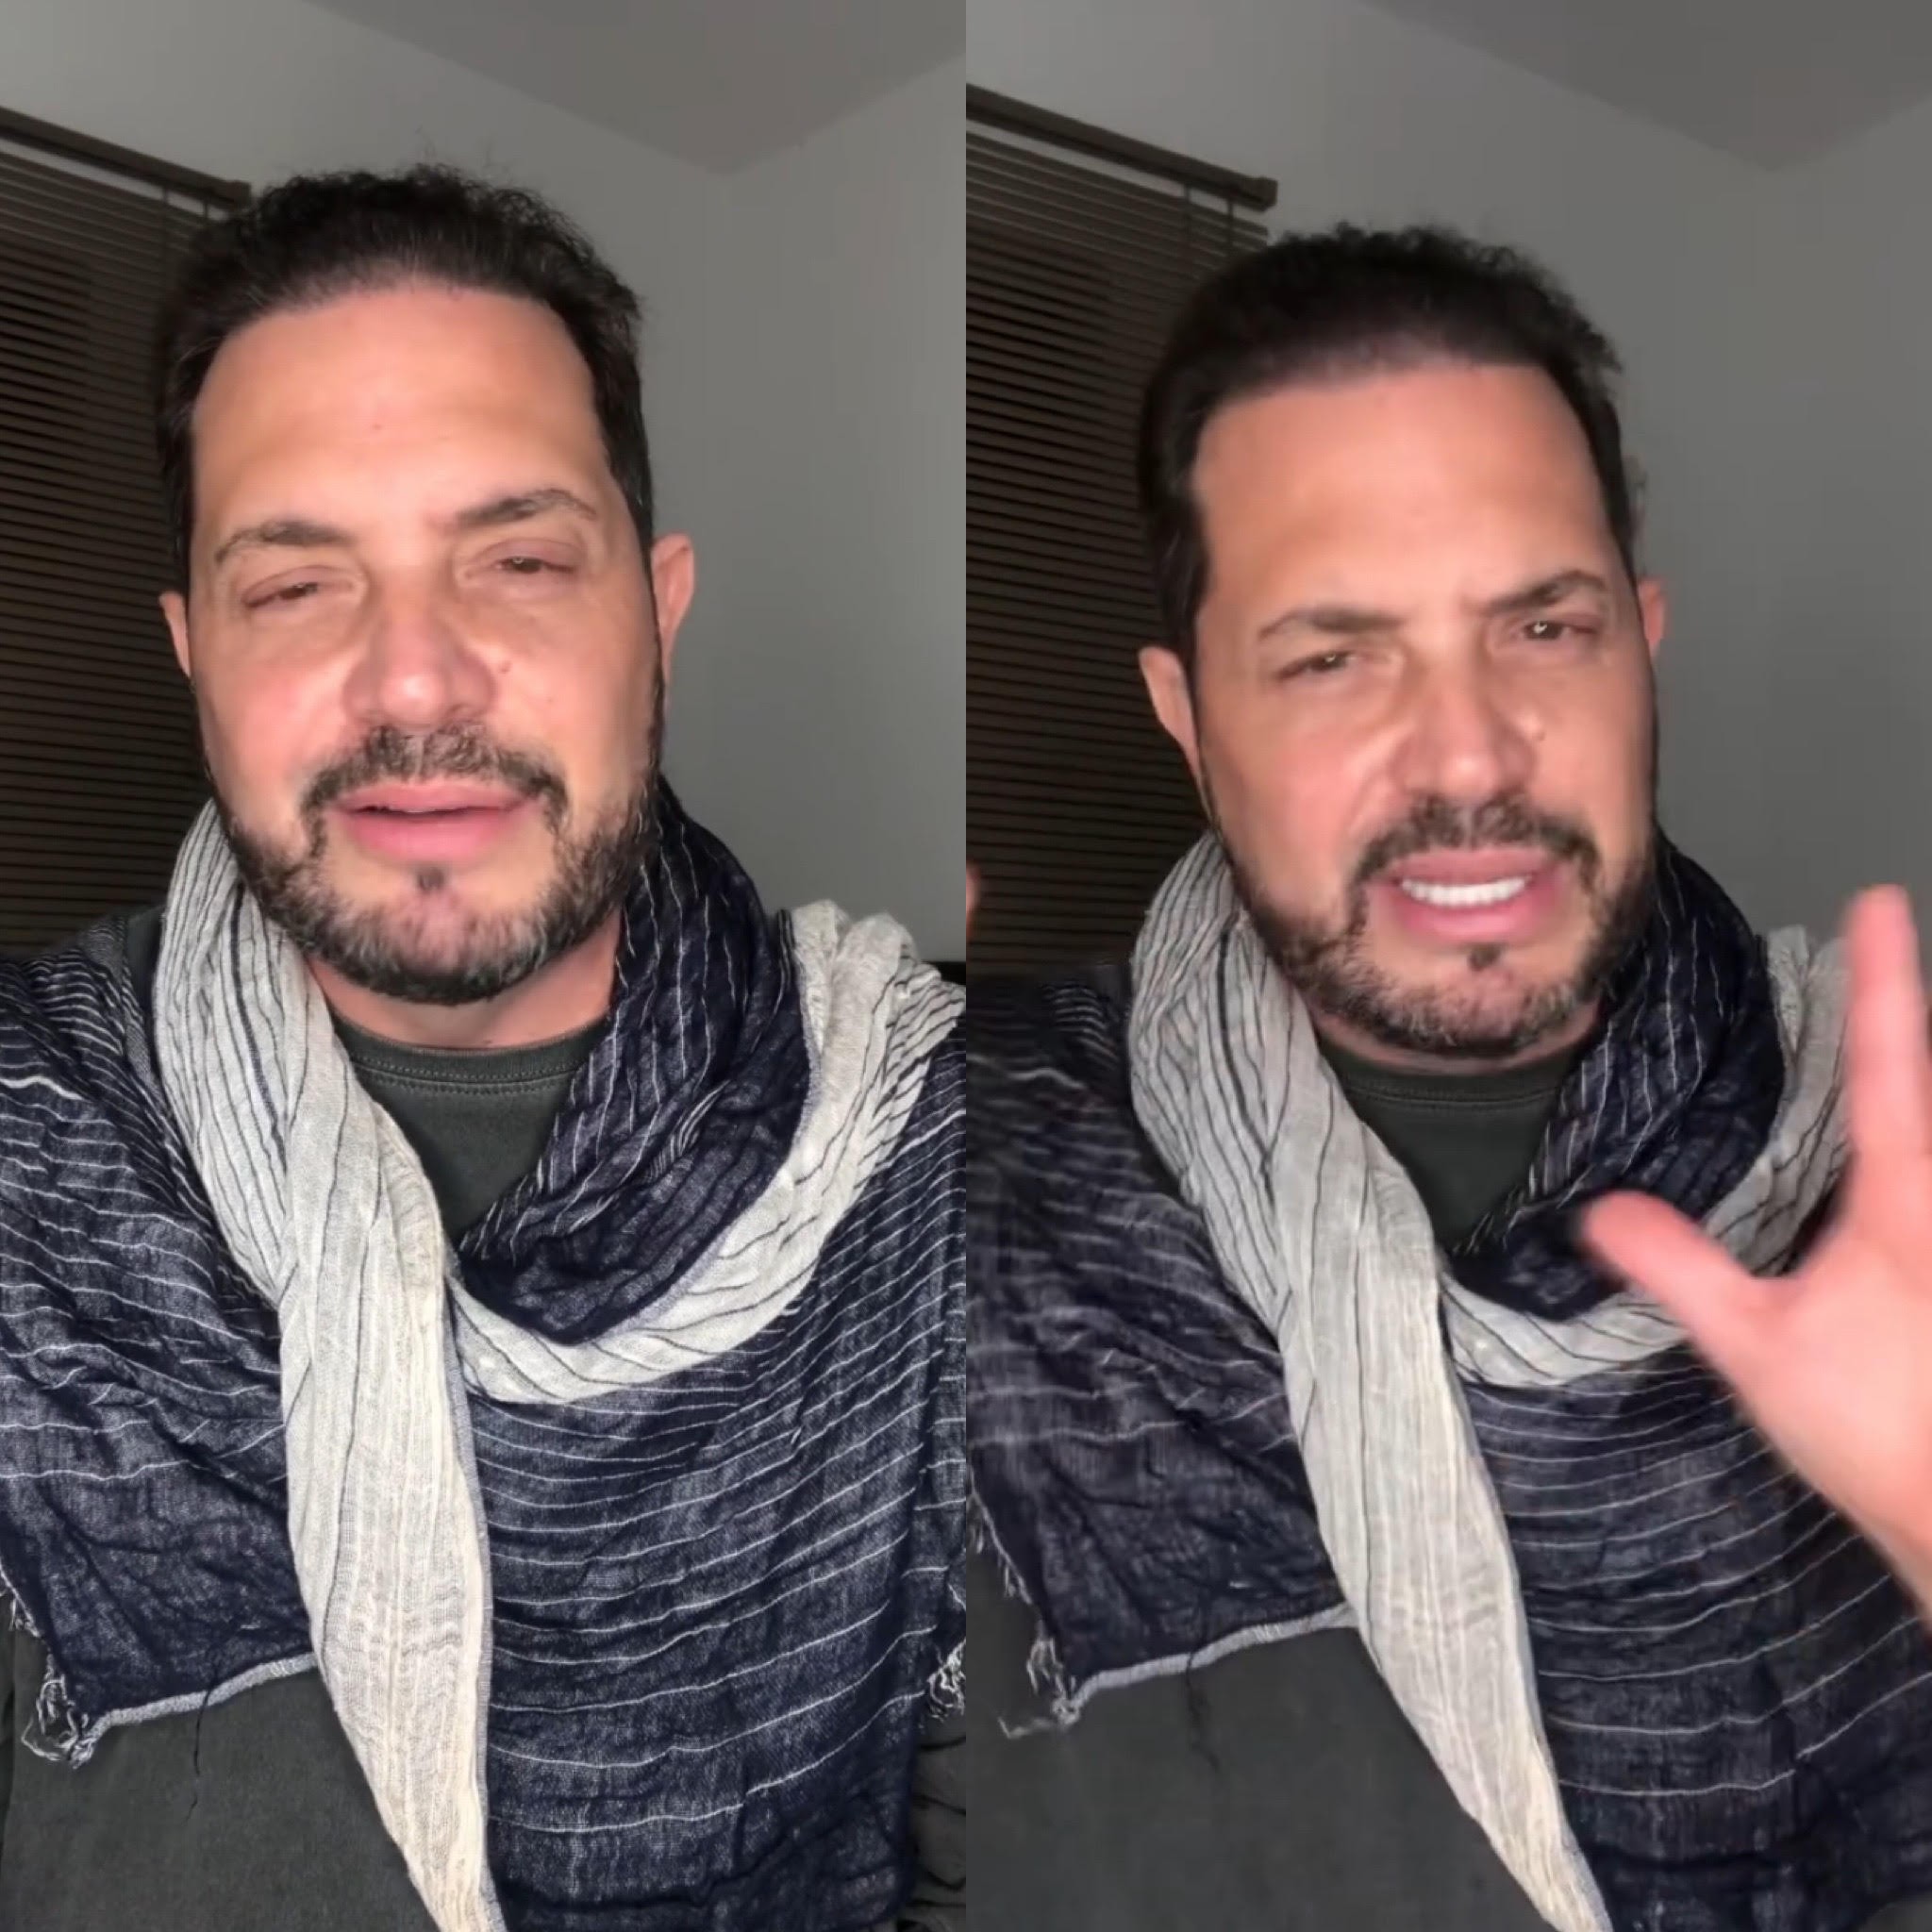 Conrado fala sobre vídeo polêmico de Dia dos Namorados (Foto: Reprodução / Instagram)